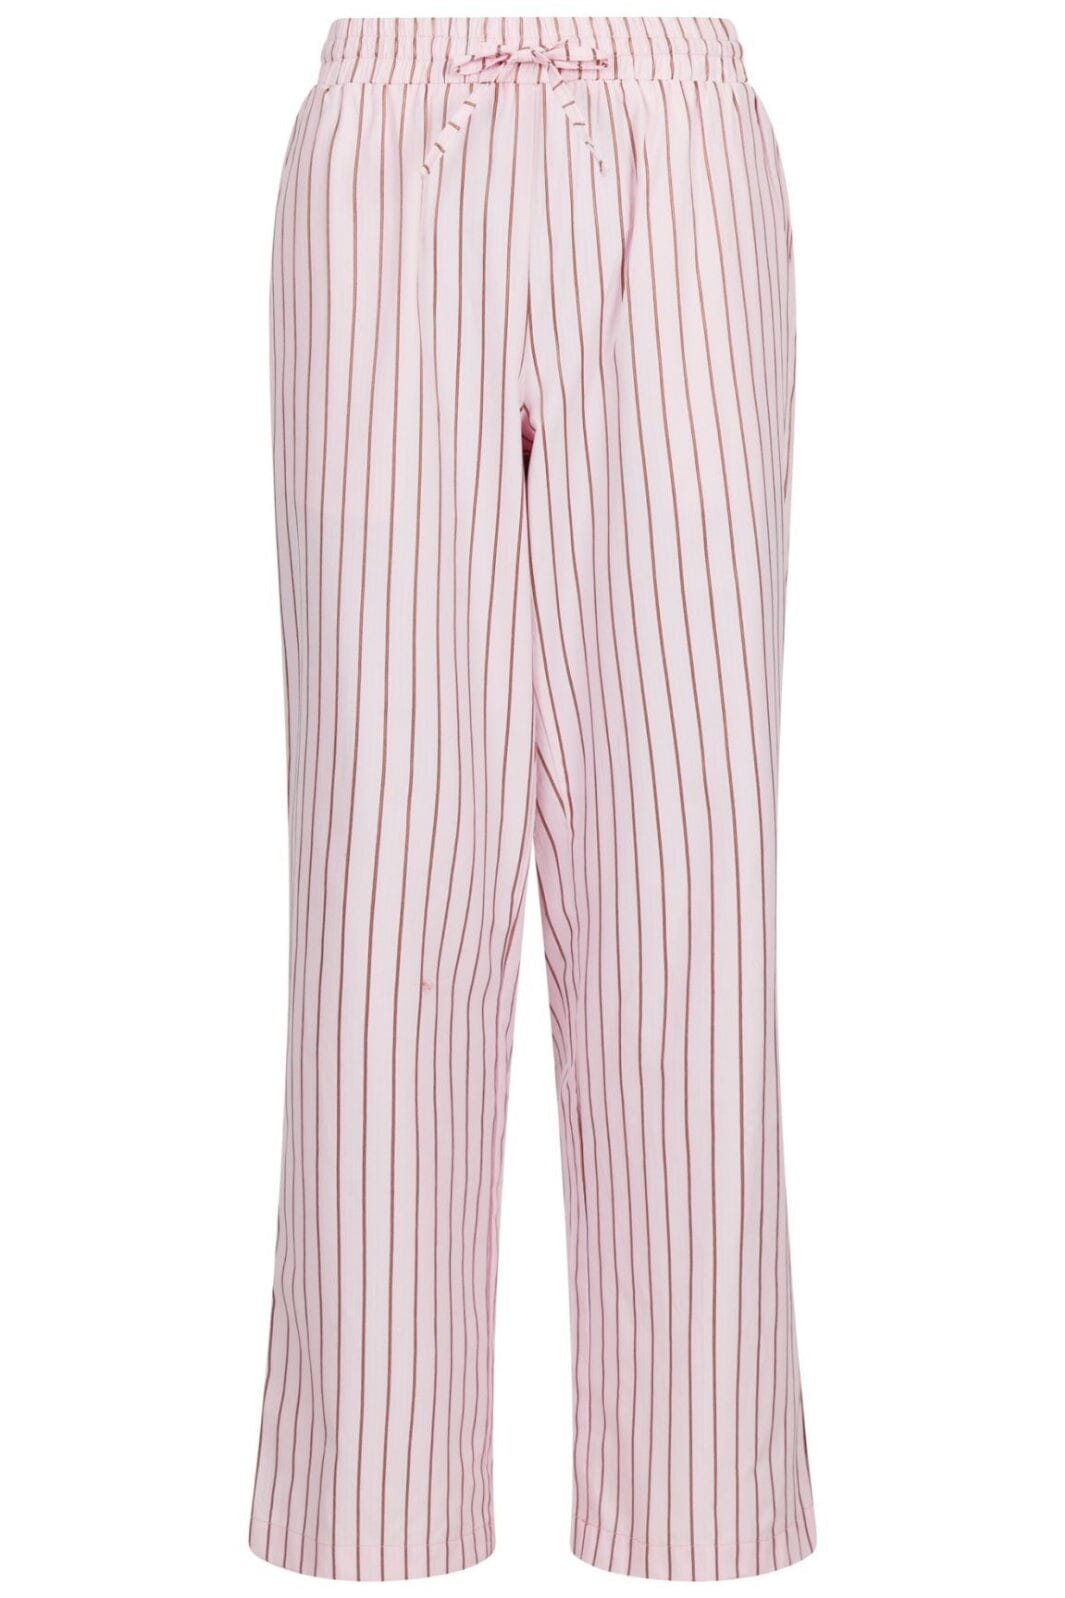 Neo Noir - Sonar Multi Stripe Pants - Light Pink Bukser 